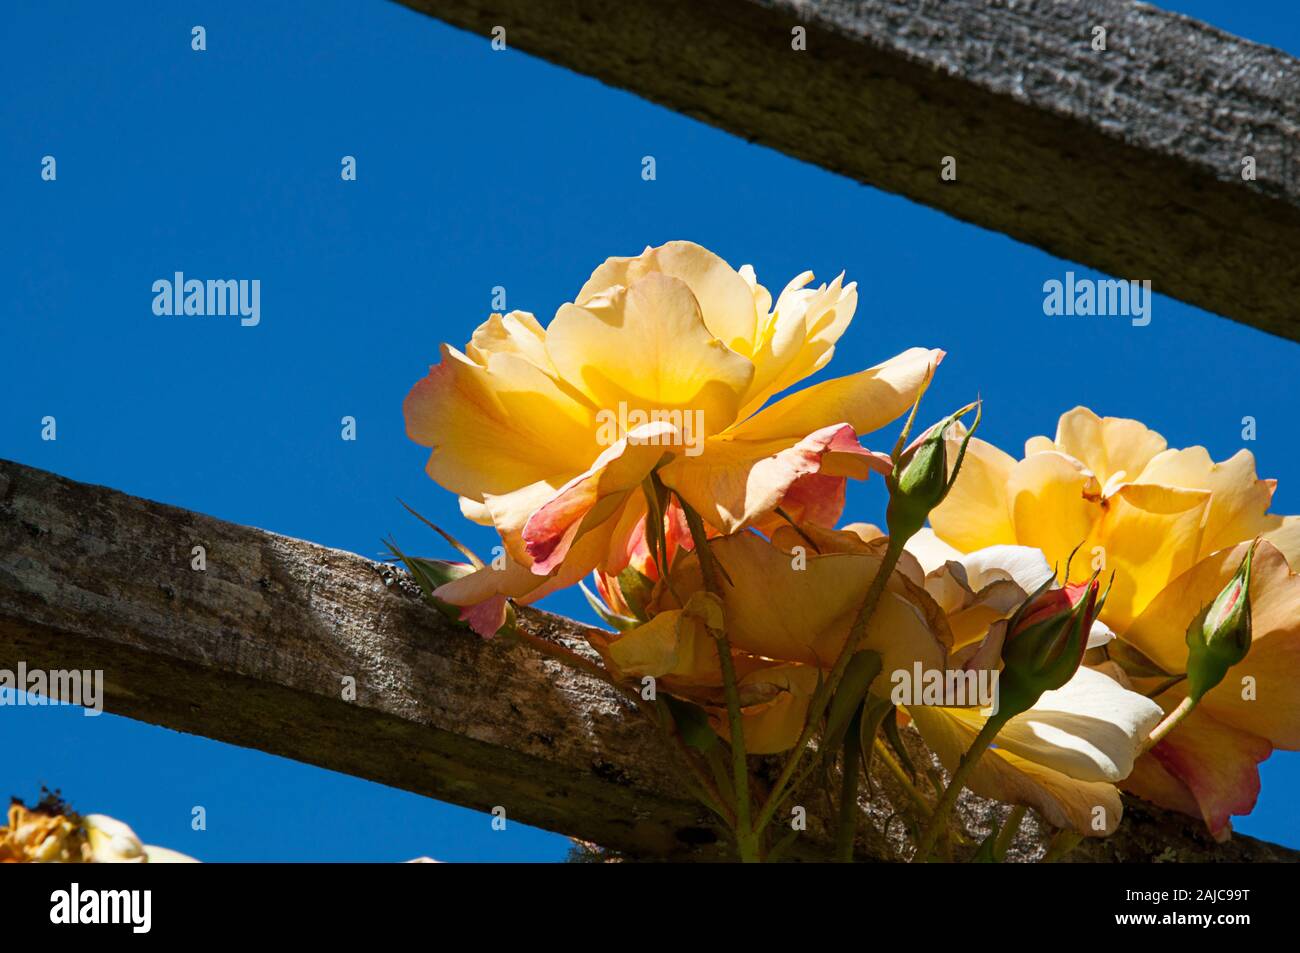 Rose giallo giardino floreale recinto e cielo blu nella splendida natura dell'immagine. Rustico recinzione di legno con luce solare Cattura i gialli con petali di rosa e Foto Stock